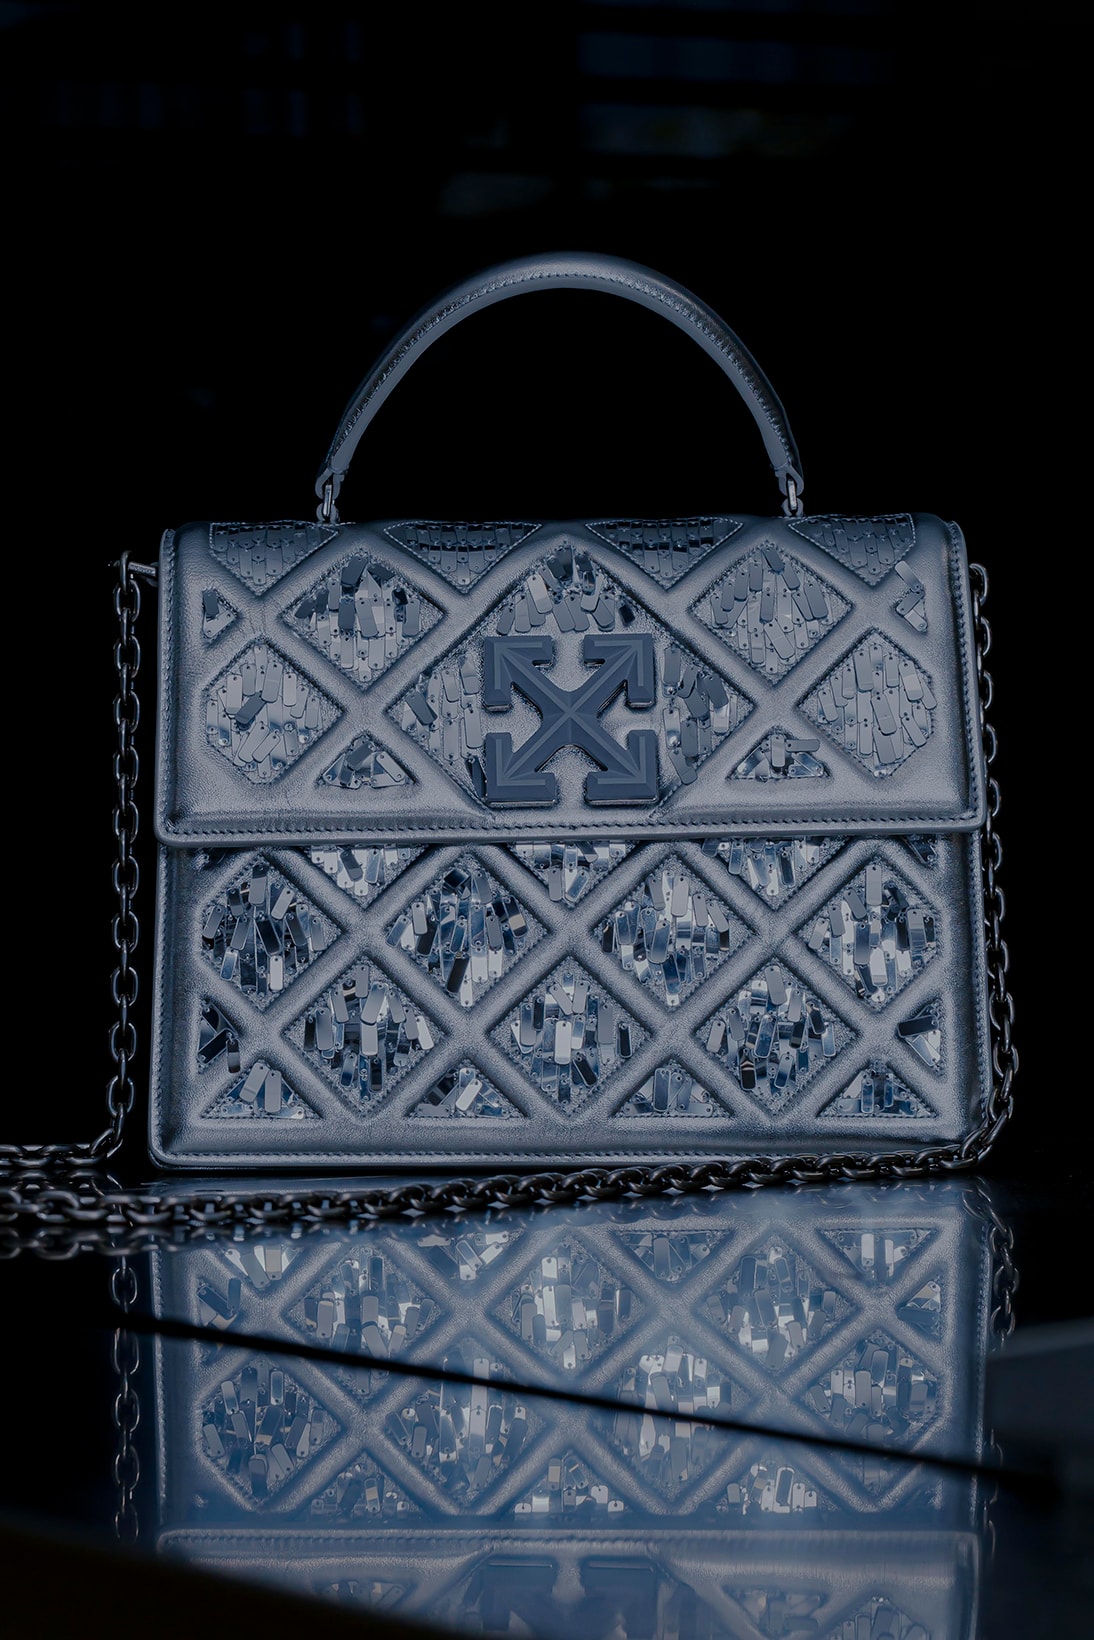 off white virgil abloh 2 8 jitney handbag bid for the louvre custom auction 